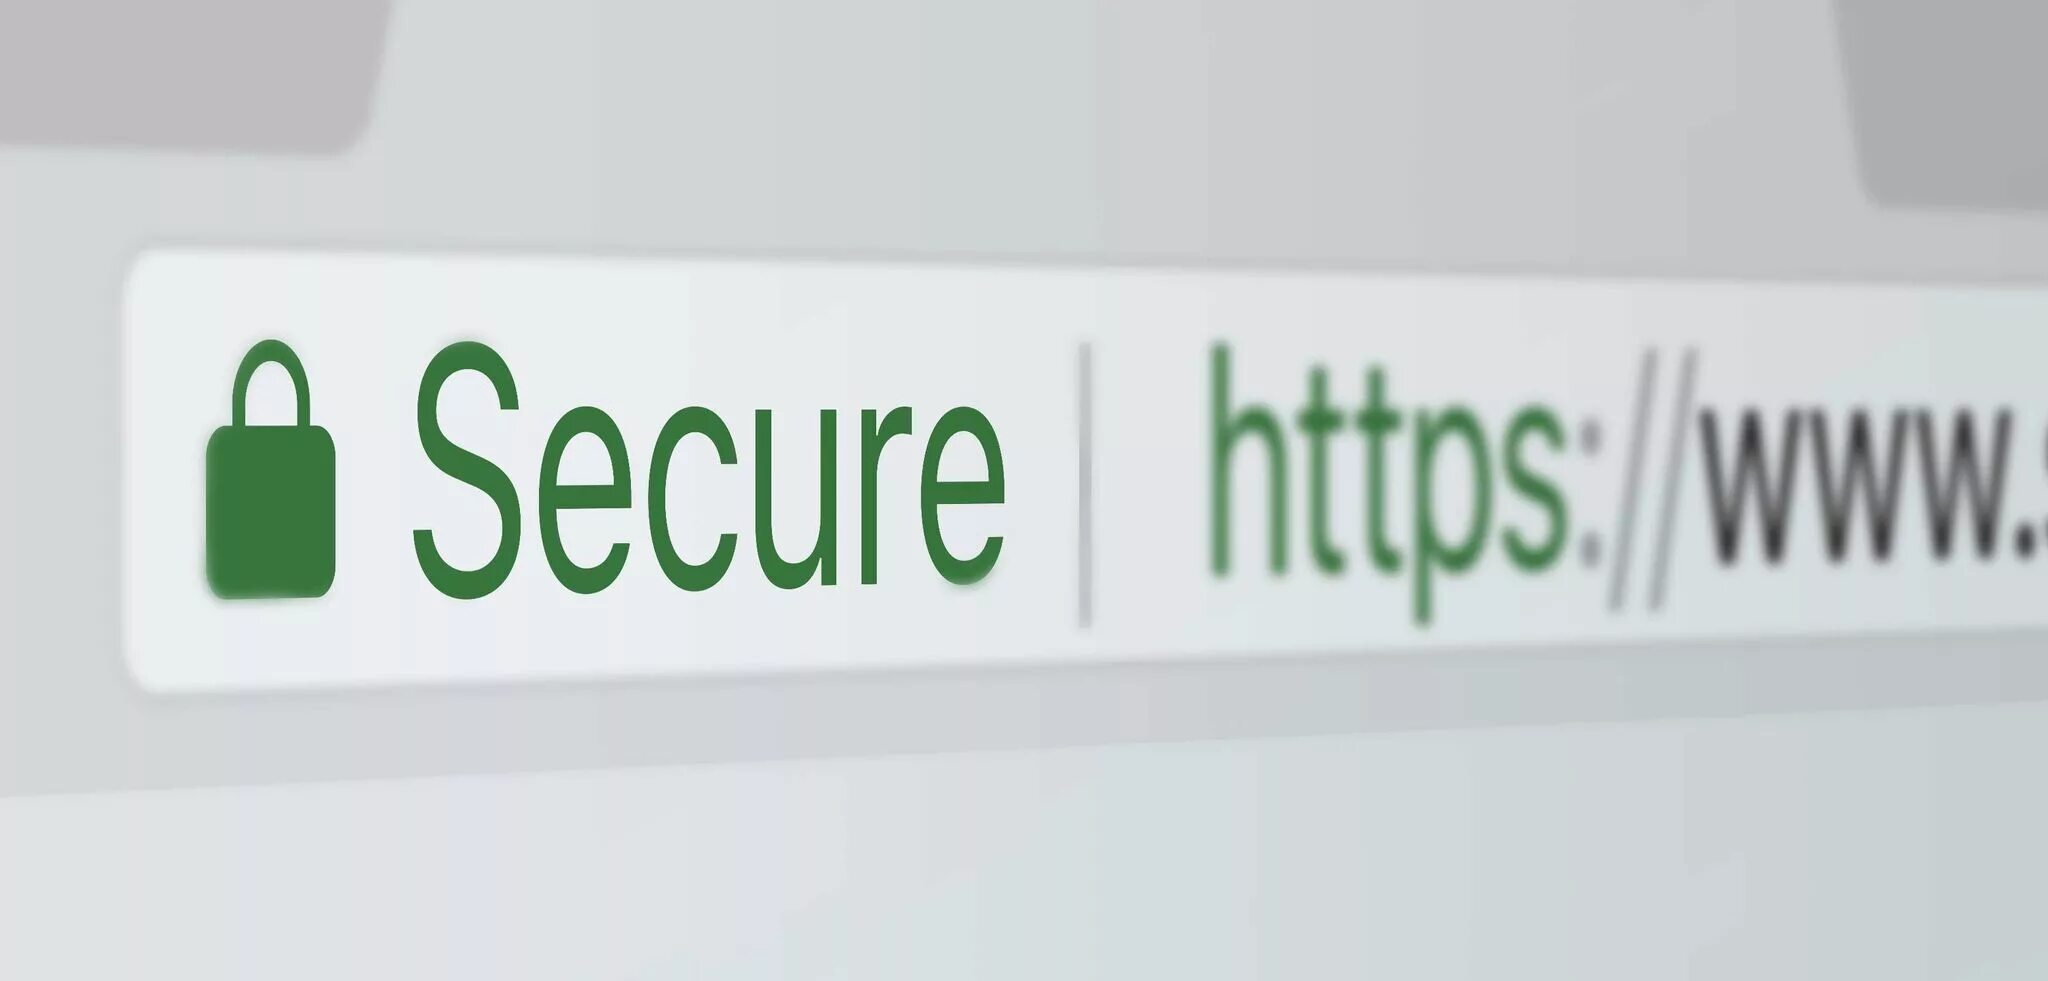 Где купить https. SSL сертификат. SSL сертификат для сайта. SSL сертификат картинки. ССЛ сертификат.